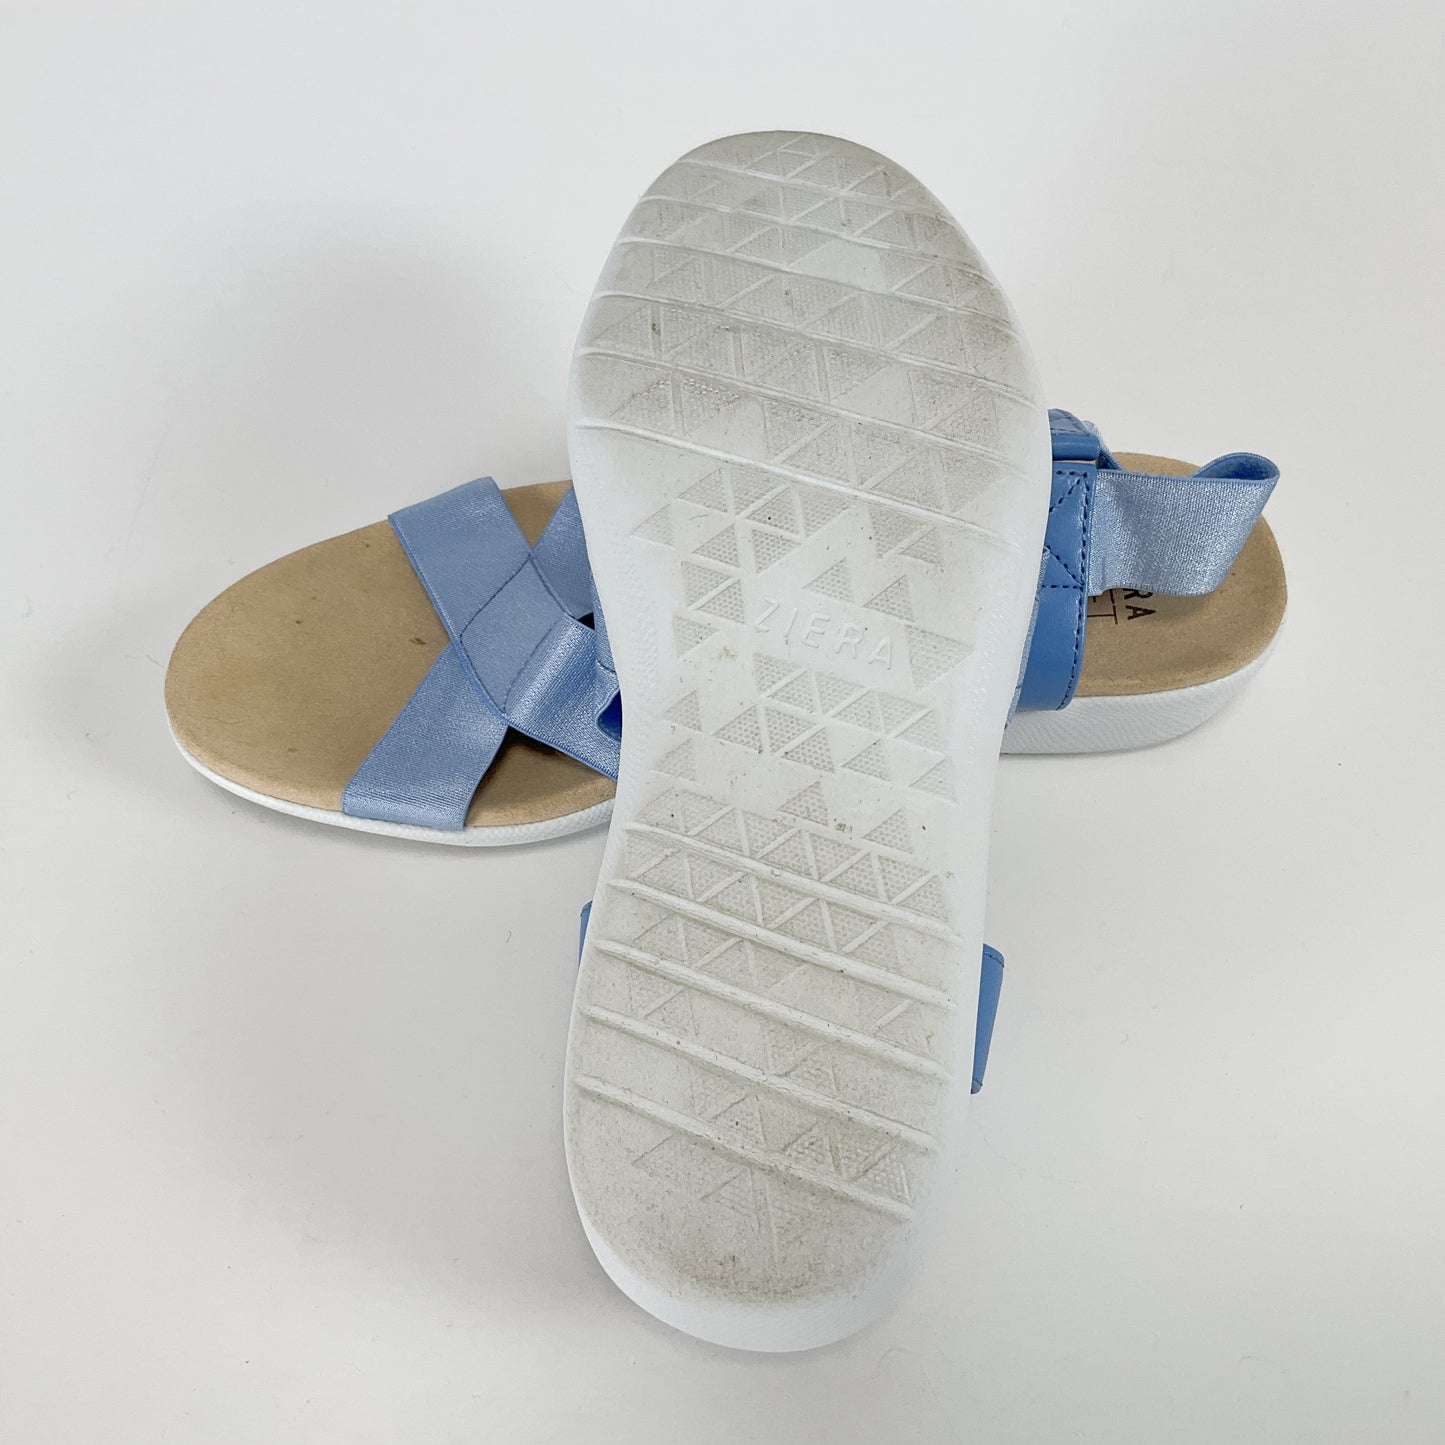 Ziera - Soft Support Blue Sandals